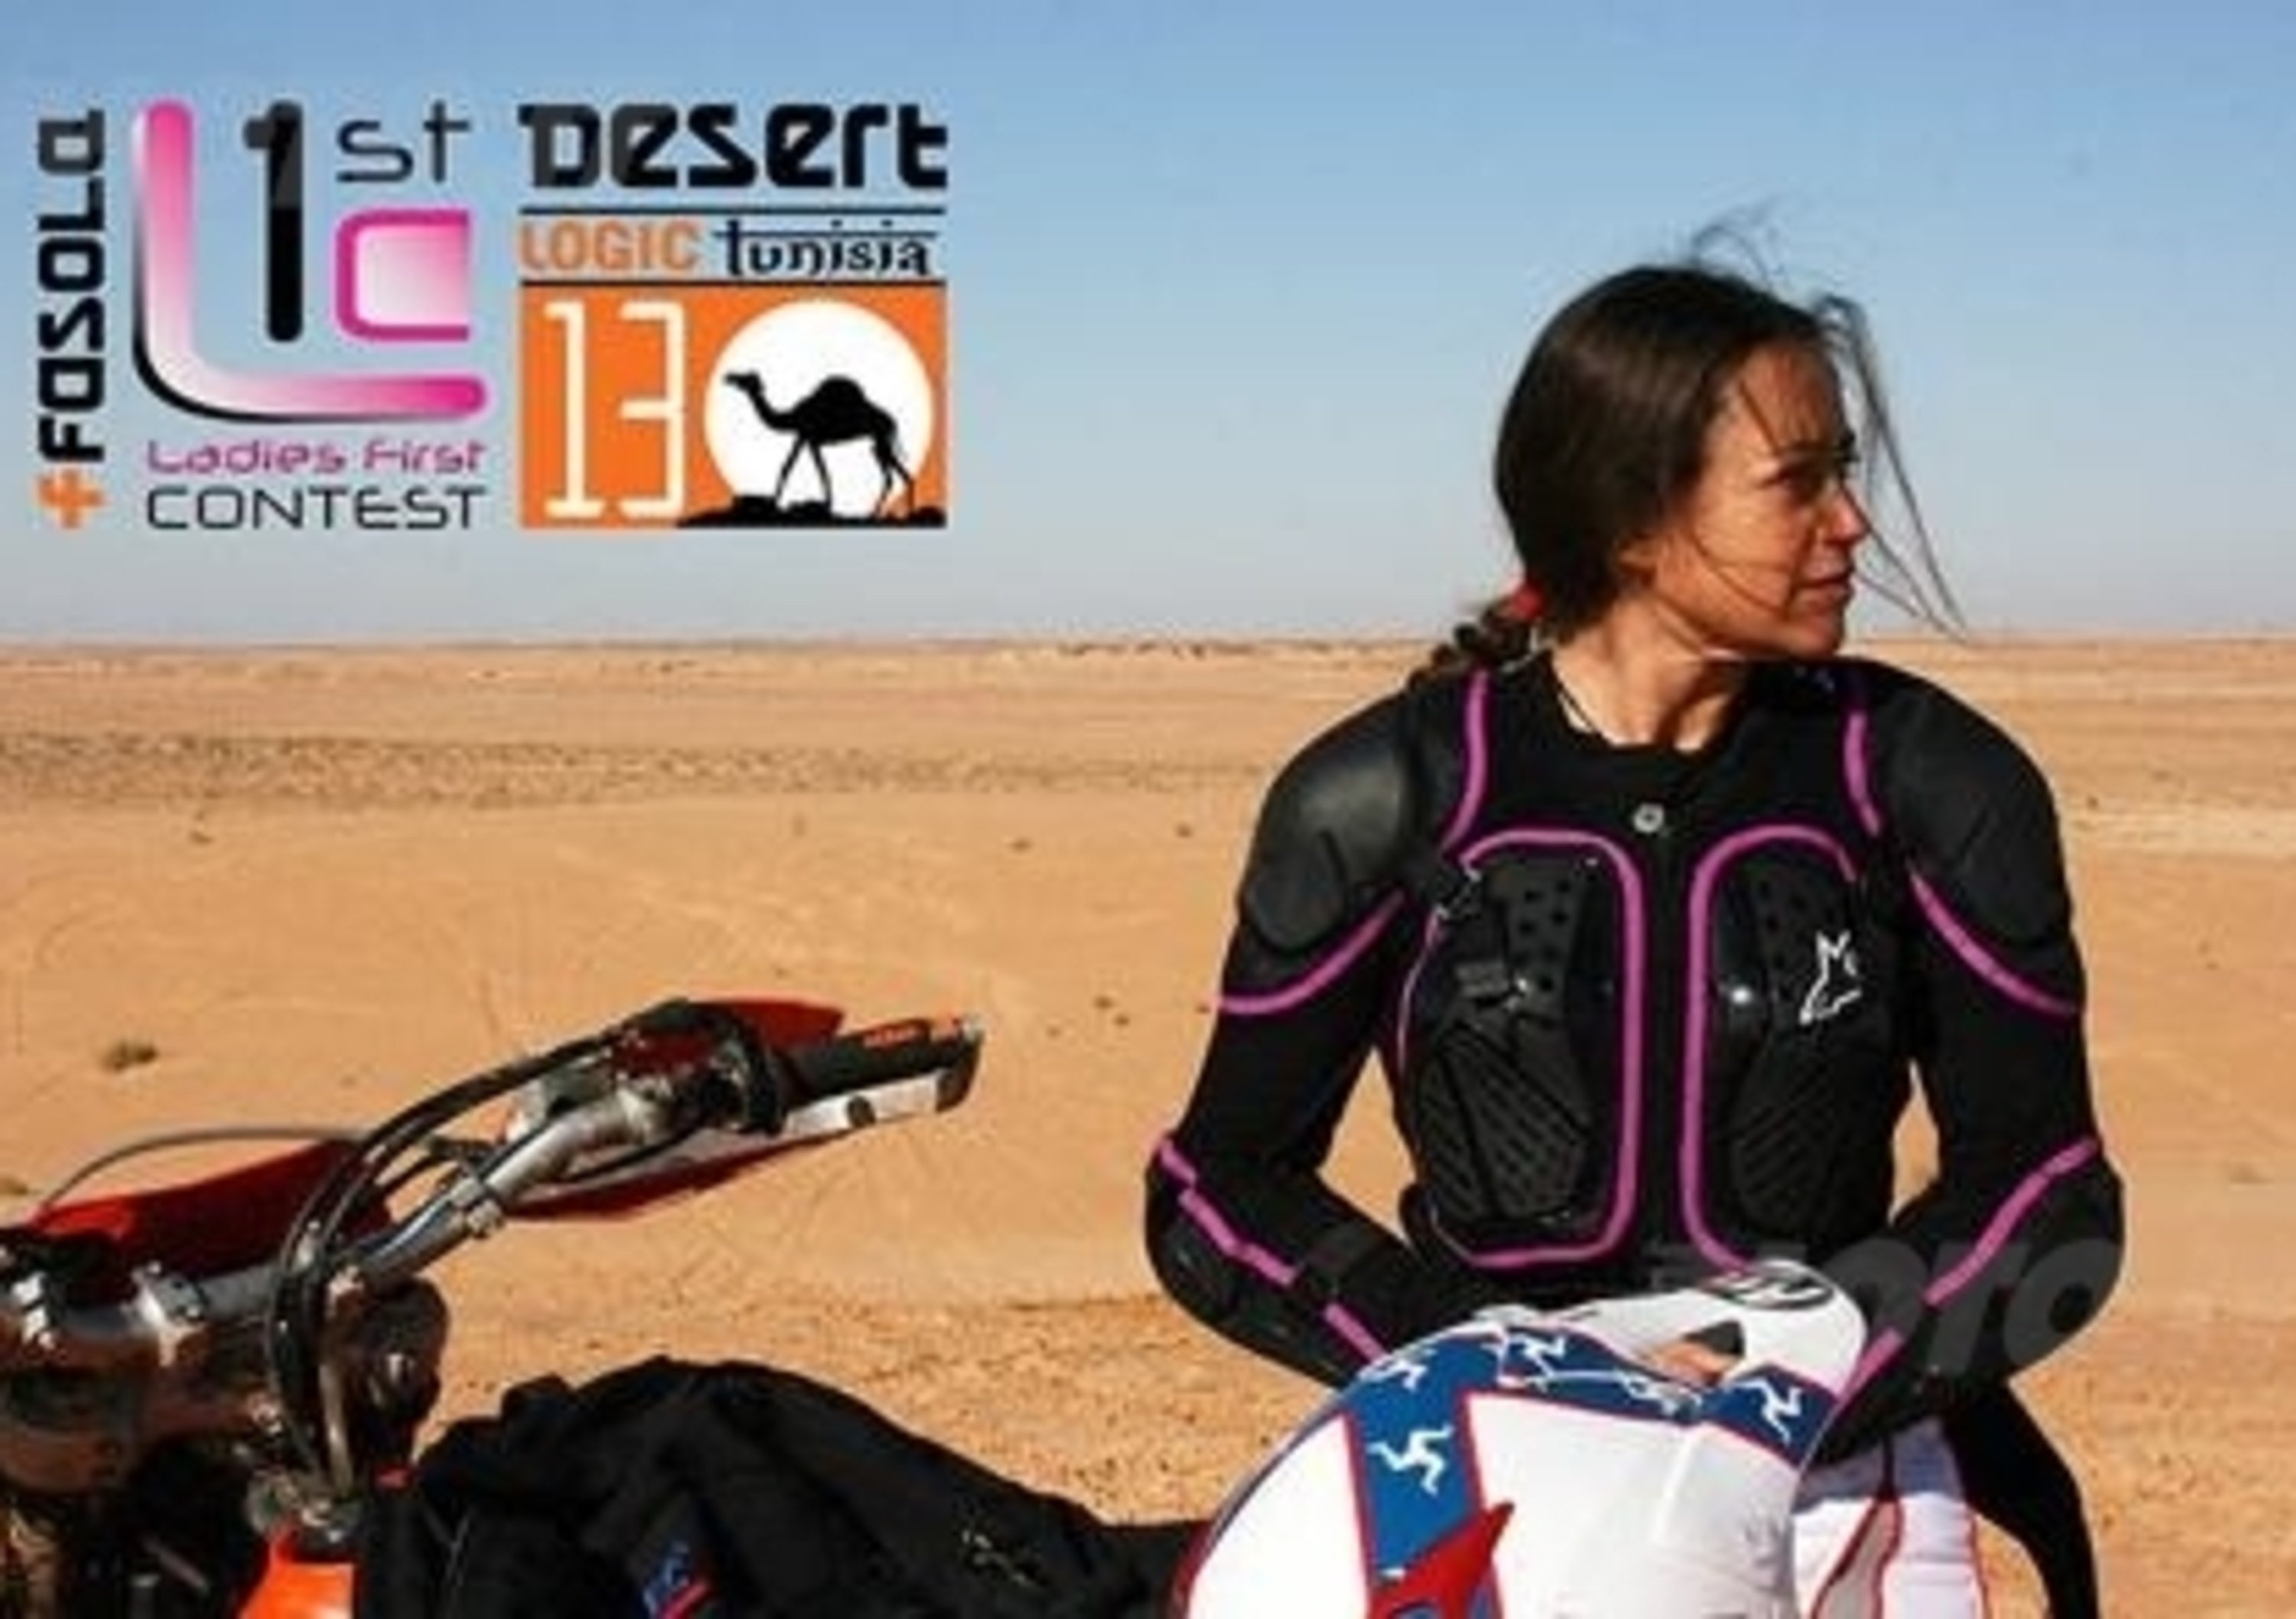 Desert Logic Tunisia 2013: al via anche una squadra femminile